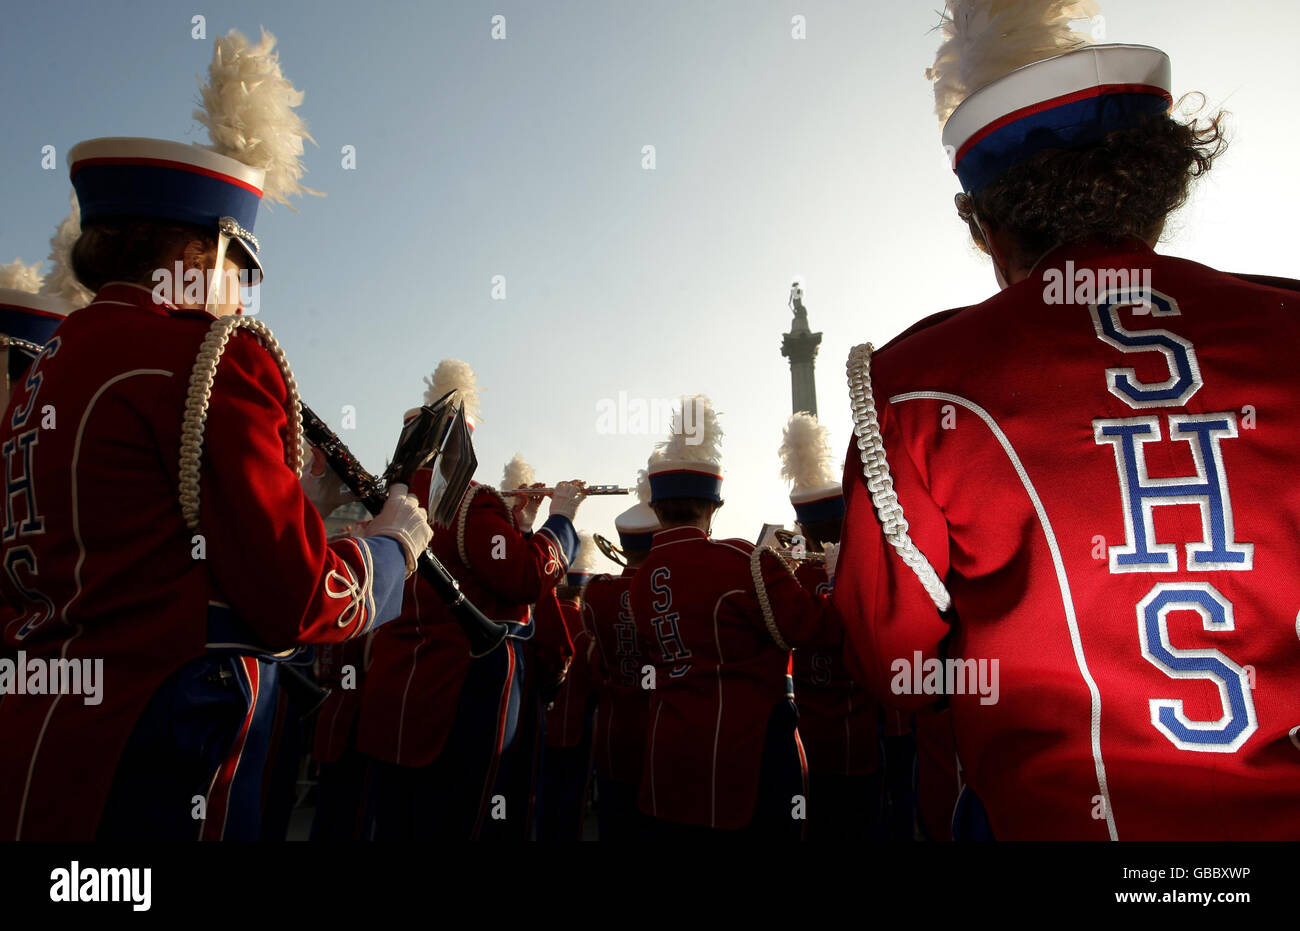 Una band di marching della Slinger High School, Wisconsin, negli Stati Uniti d'America, si esibisce di fronte alla National Gallery, a Trafalgar Square, Londra, come parte di un concerto caldo in vista della New Years Day Parade. Foto Stock